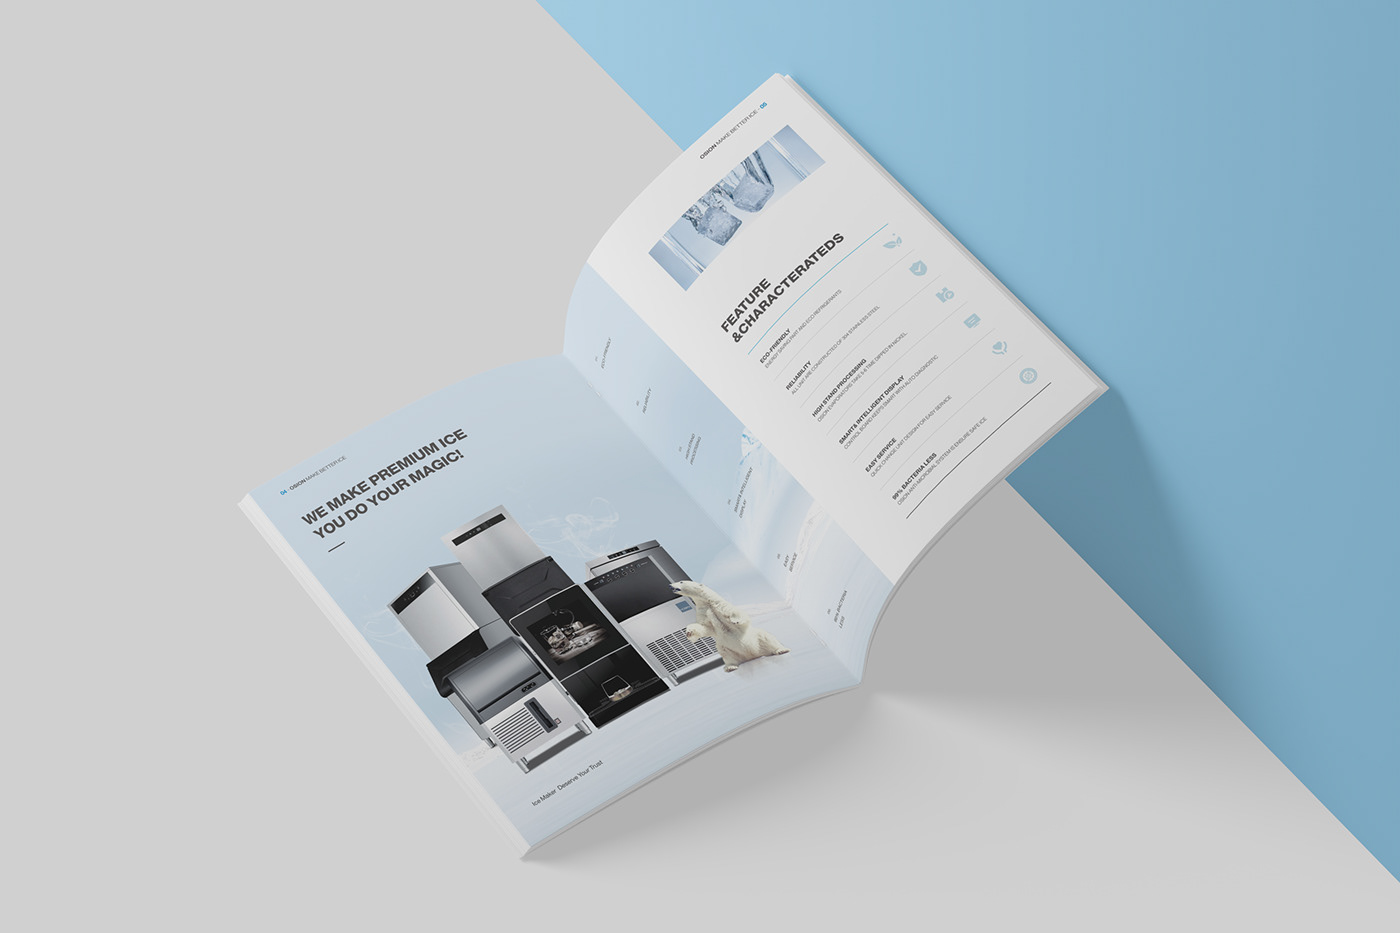 design 制冰机画册 画册设计，宣传册设计， 招商手册 产品手册 宣传册 排版 視覺設計